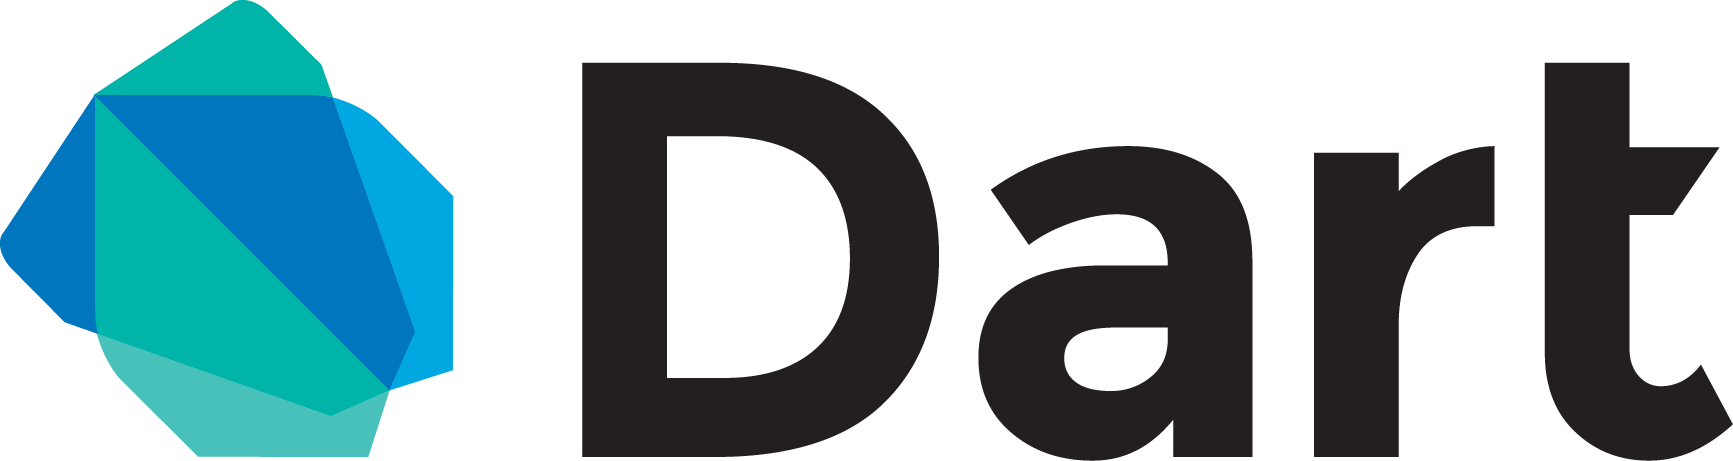 Programovací jazyk Dart - Základné konštrukcie jazyka Dart